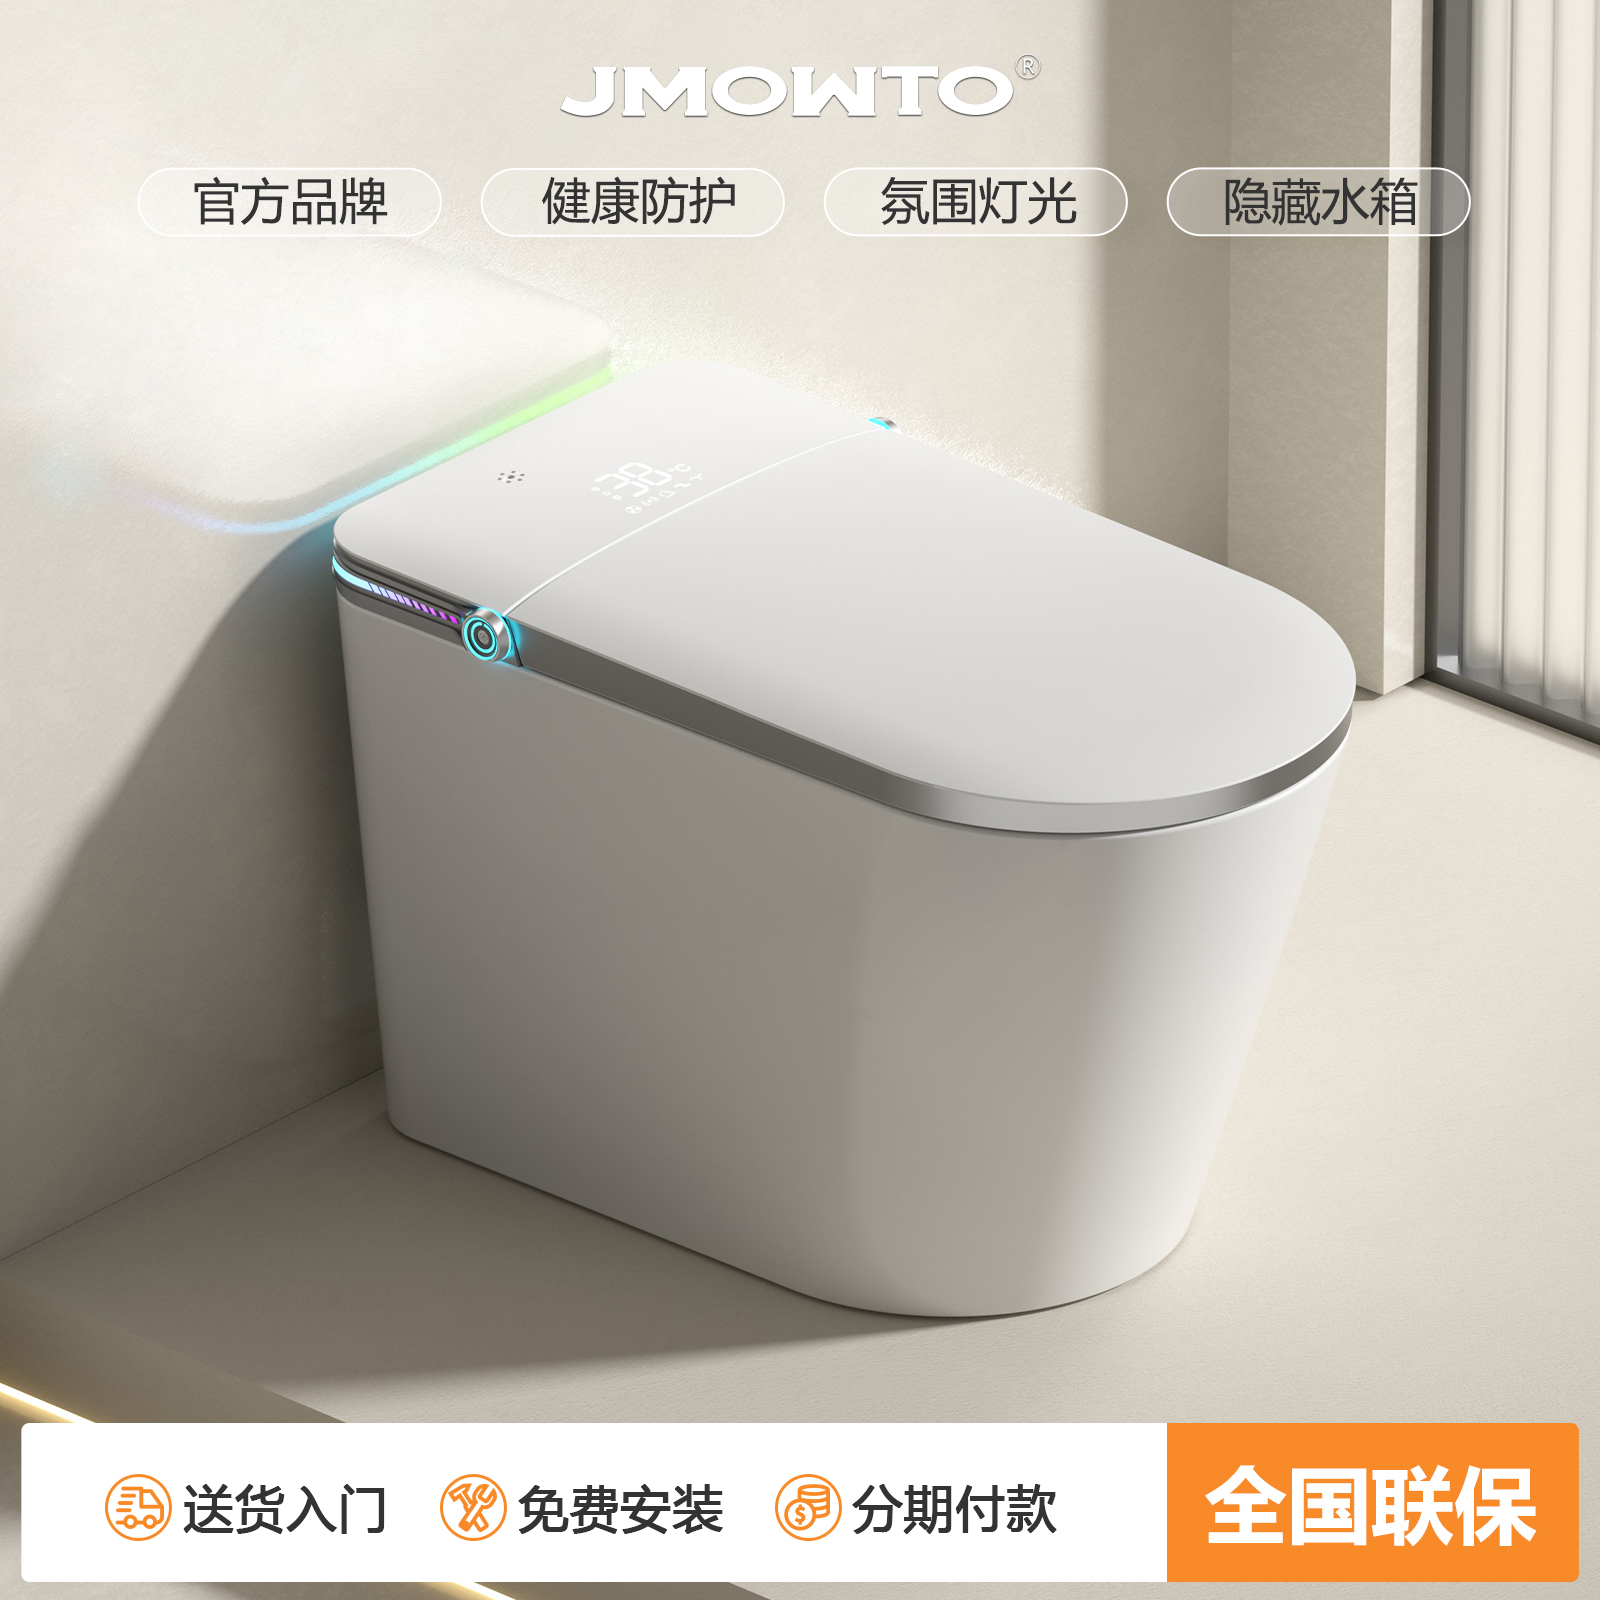 JMOWTO即热式轻智能马桶全自动家用无水压限制带水箱一体式坐便器